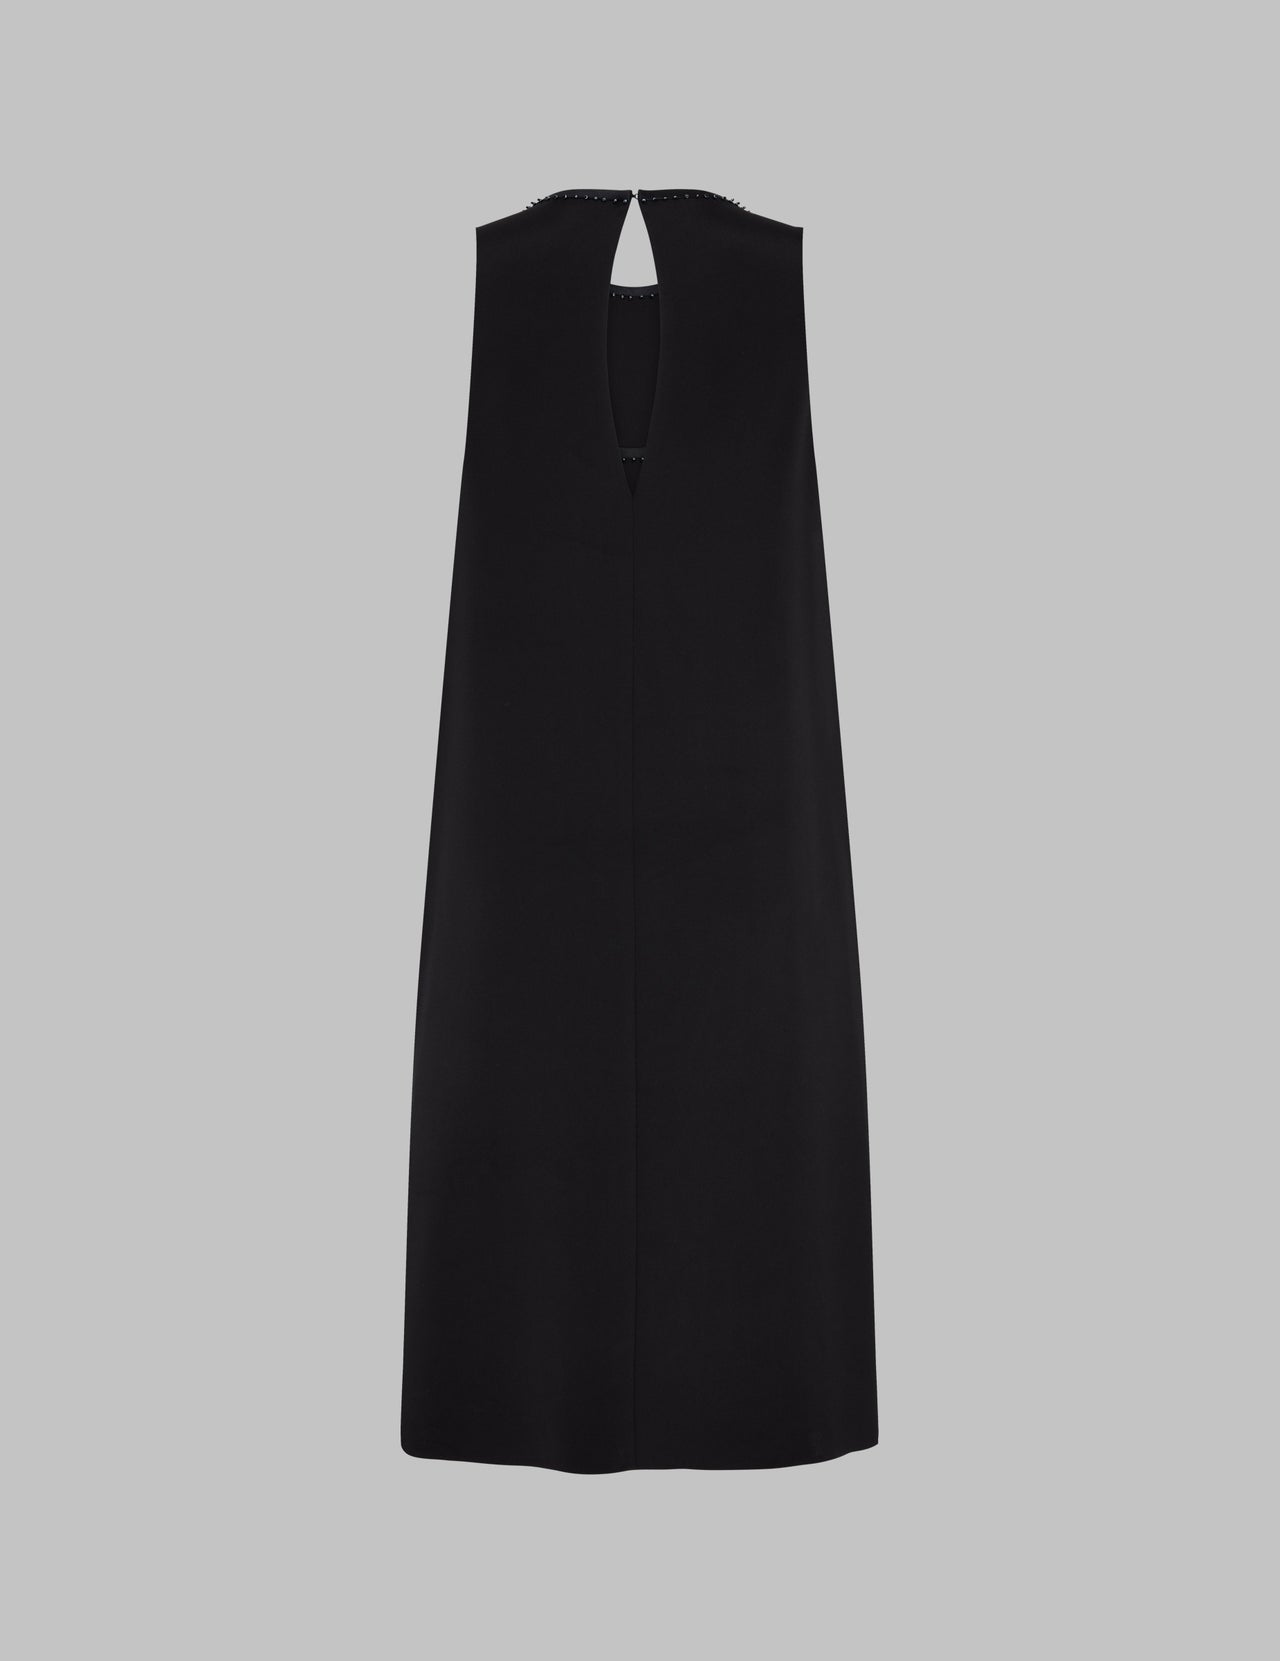  Black Silk Satin Embellished Shift Dress  